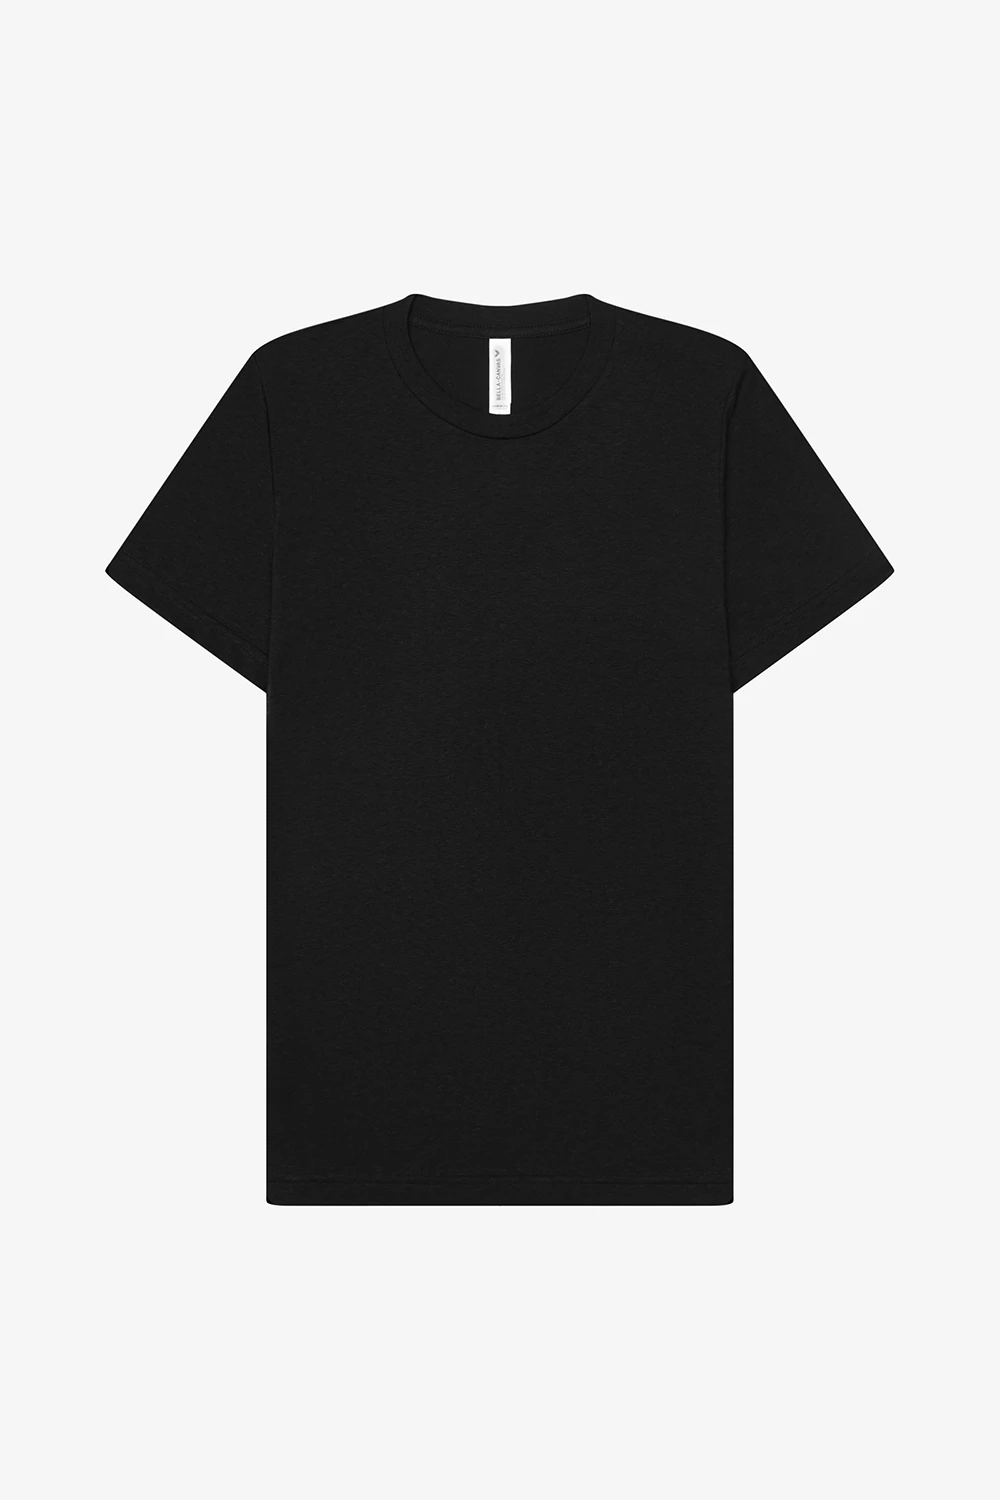 New Port Engineering  Black Vintage T-shirt design (front and back)